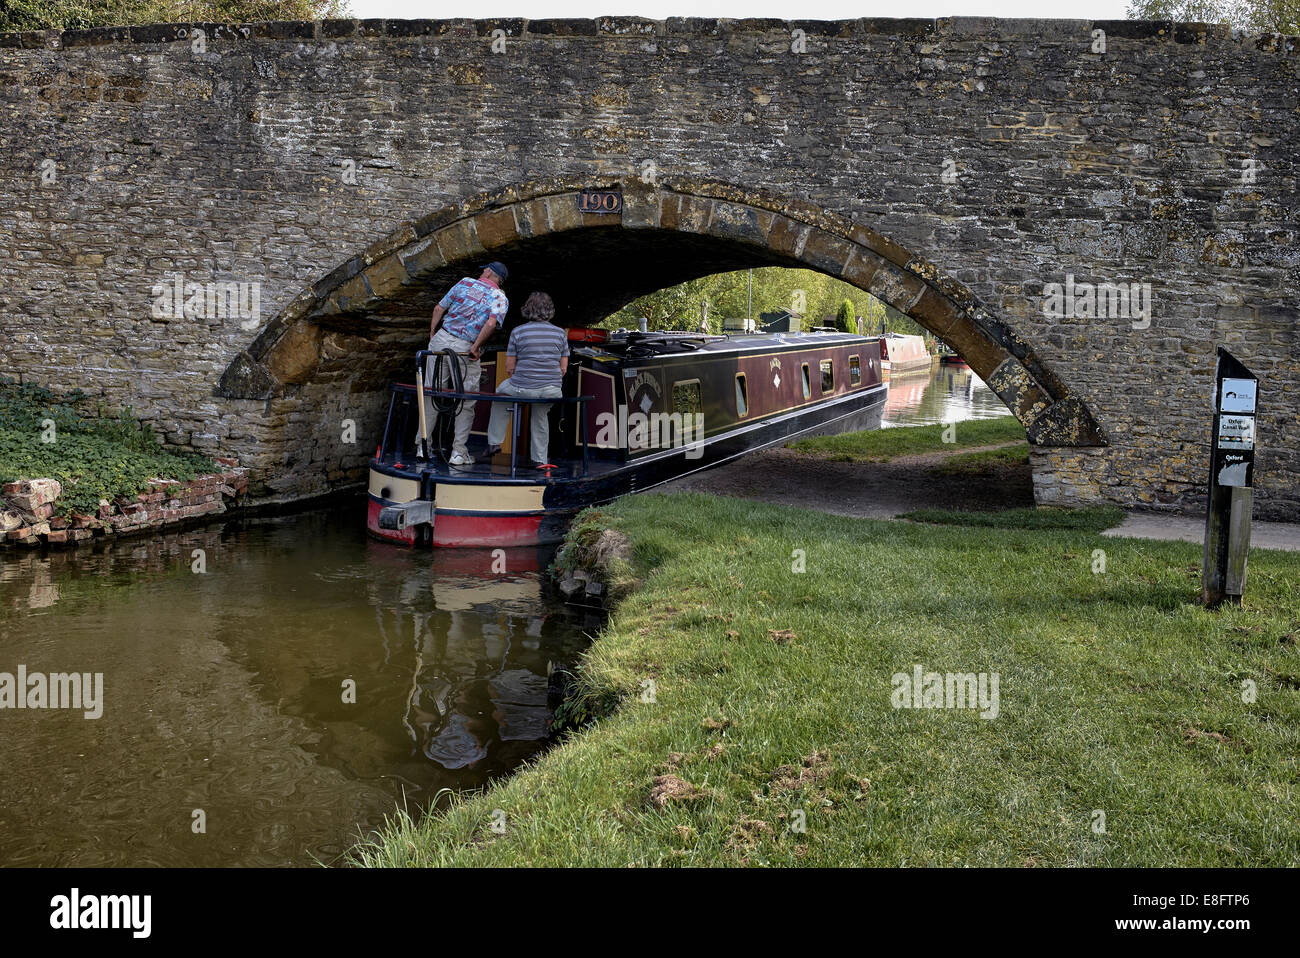 Canale Oxford. Barca stretta che naviga attraverso il ponte sul canale della Oxfordshire Canal Way, Aynho Wharf Nr. Banbury Inghilterra Regno Unito Foto Stock